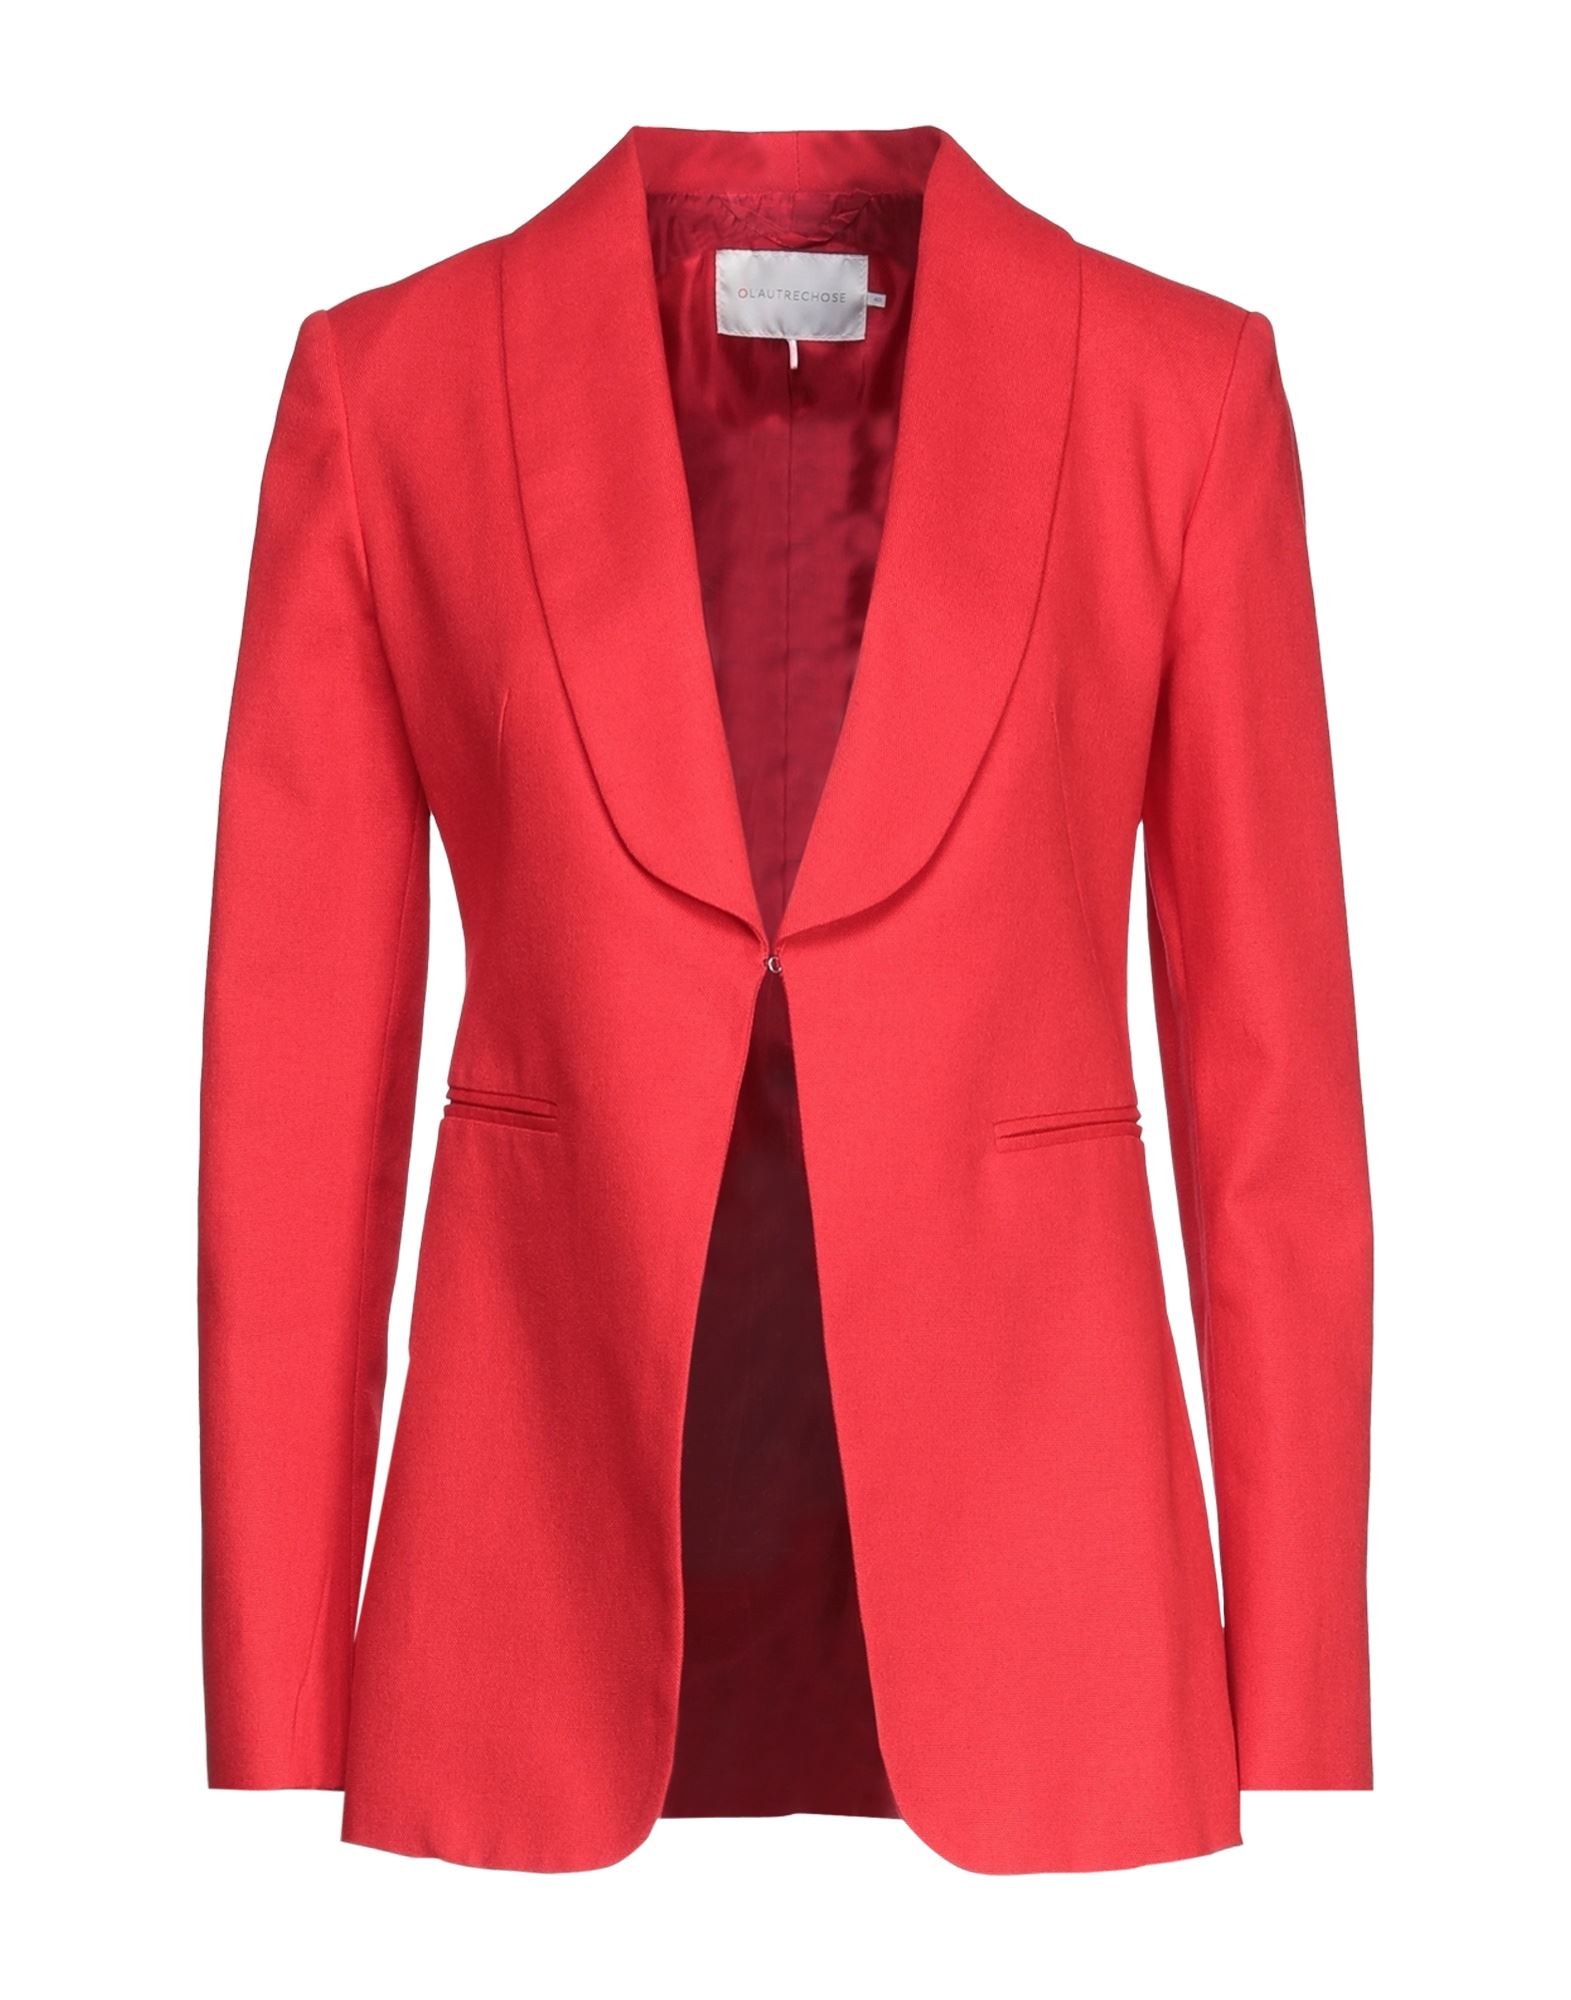 L'autre Chose L' Autre Chose Woman Suit Jacket Red Size 2 Cotton